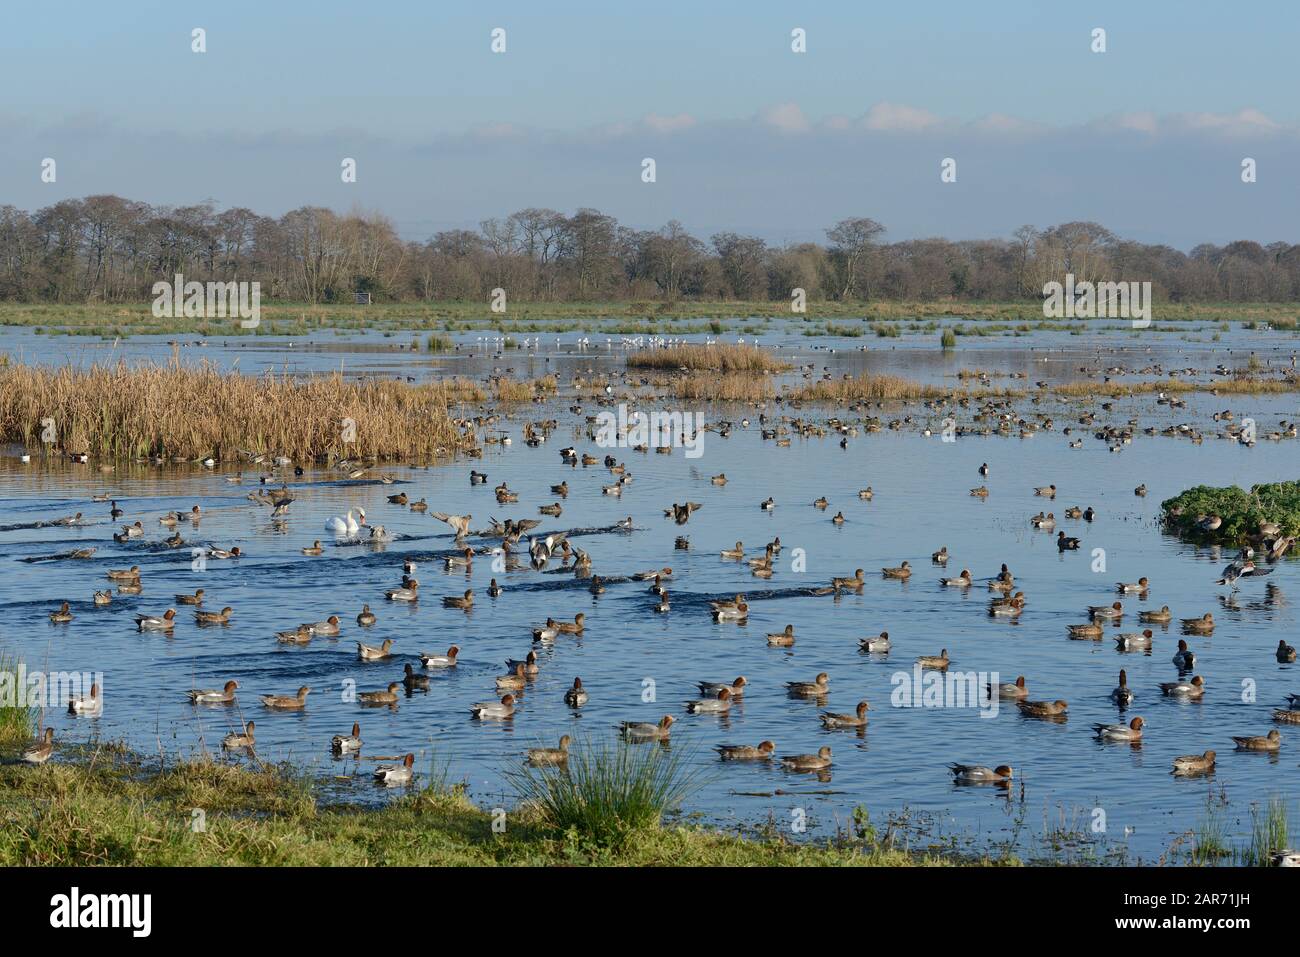 Wigeon (Anas penelope) troupeau et autres oiseaux sauvages sur les pâturages inondés, réserve naturelle nationale de Catcott Lows, Somerset Levels, Royaume-Uni. Banque D'Images